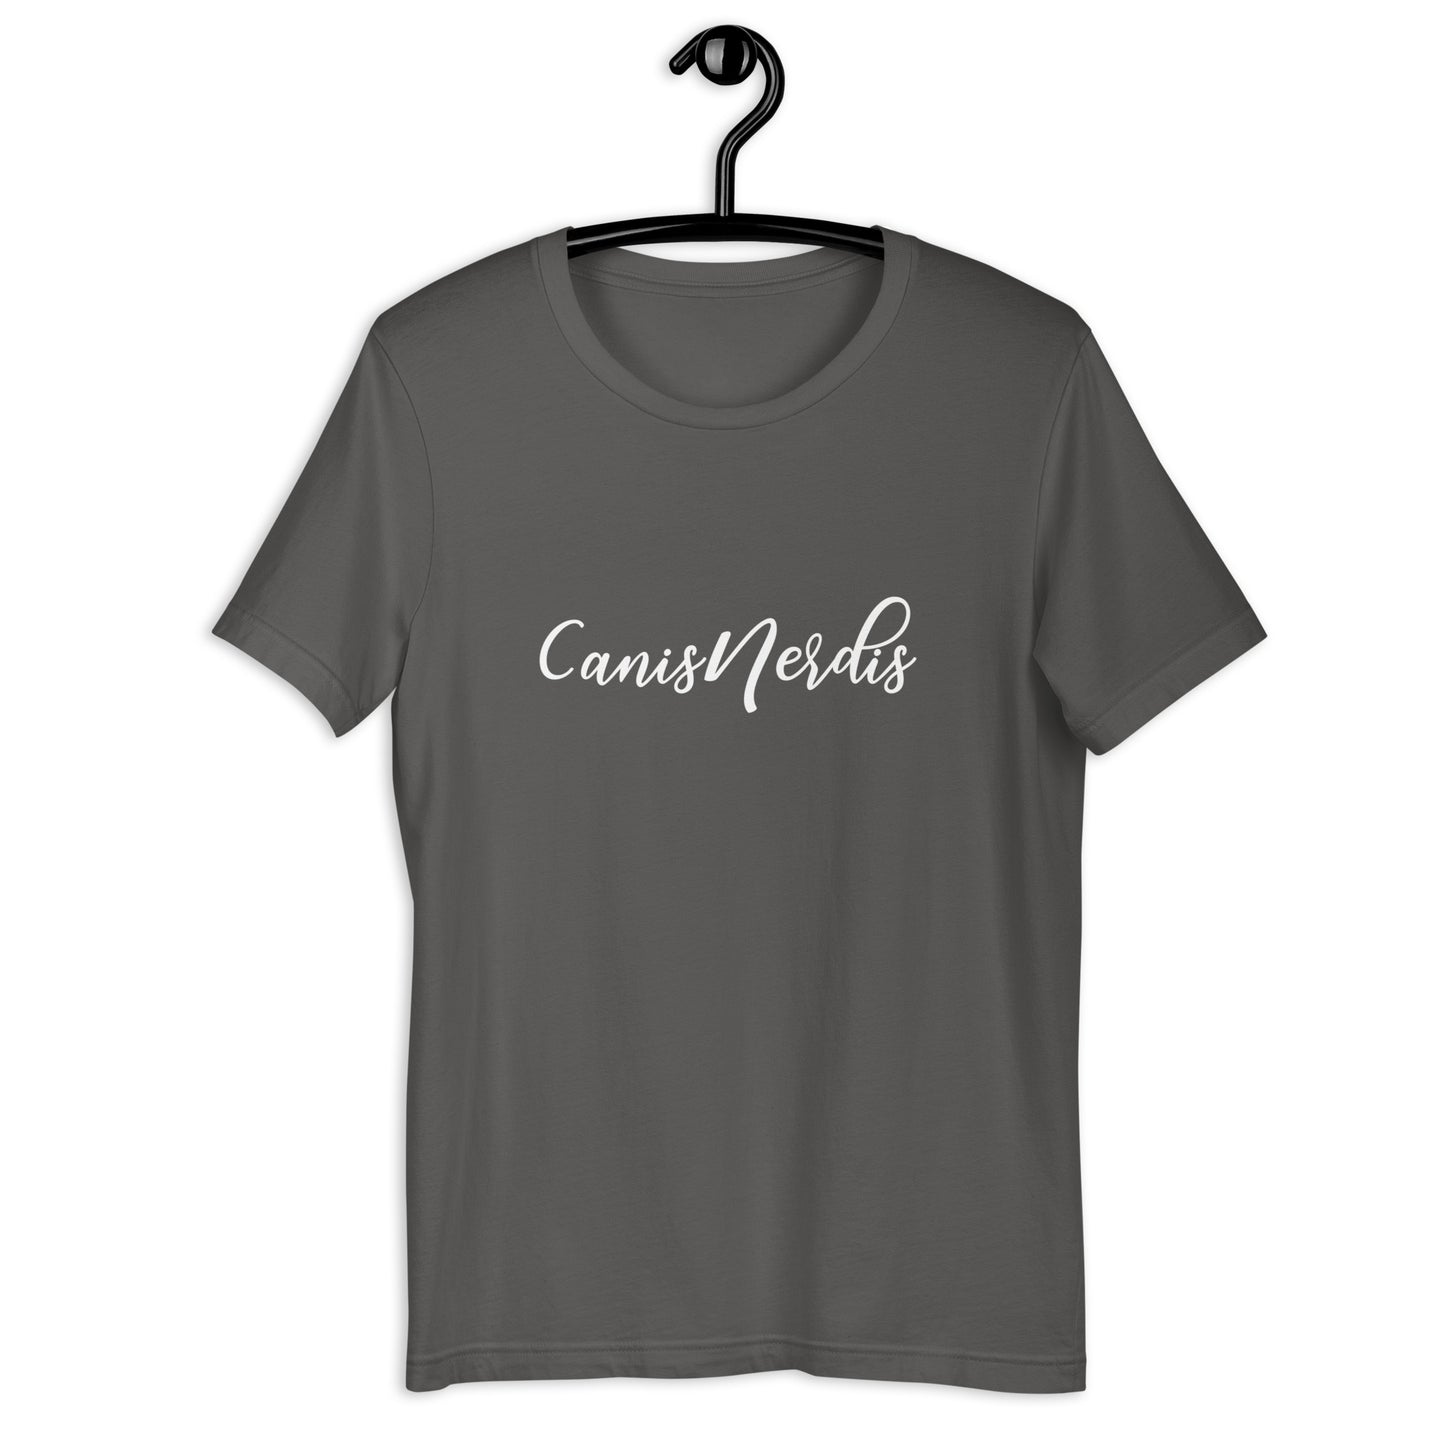 CANIS NERDIS - Unisex t-shirt